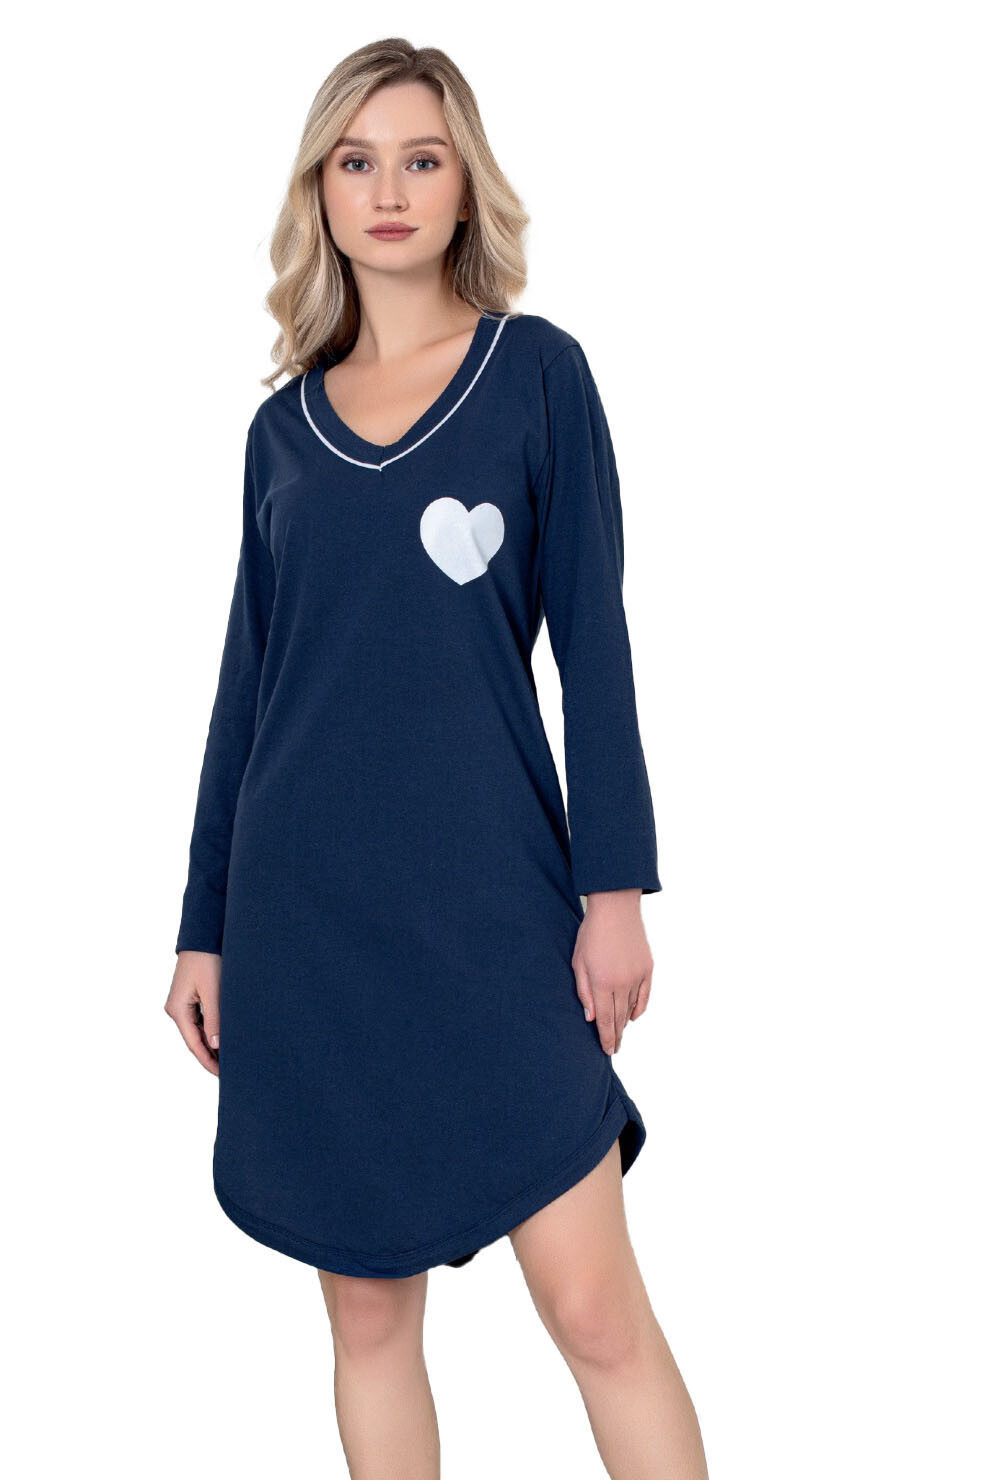 Dámská noční košile CHR-K 3025 tm. modrá se srdíčkem - Christina Secret XXL